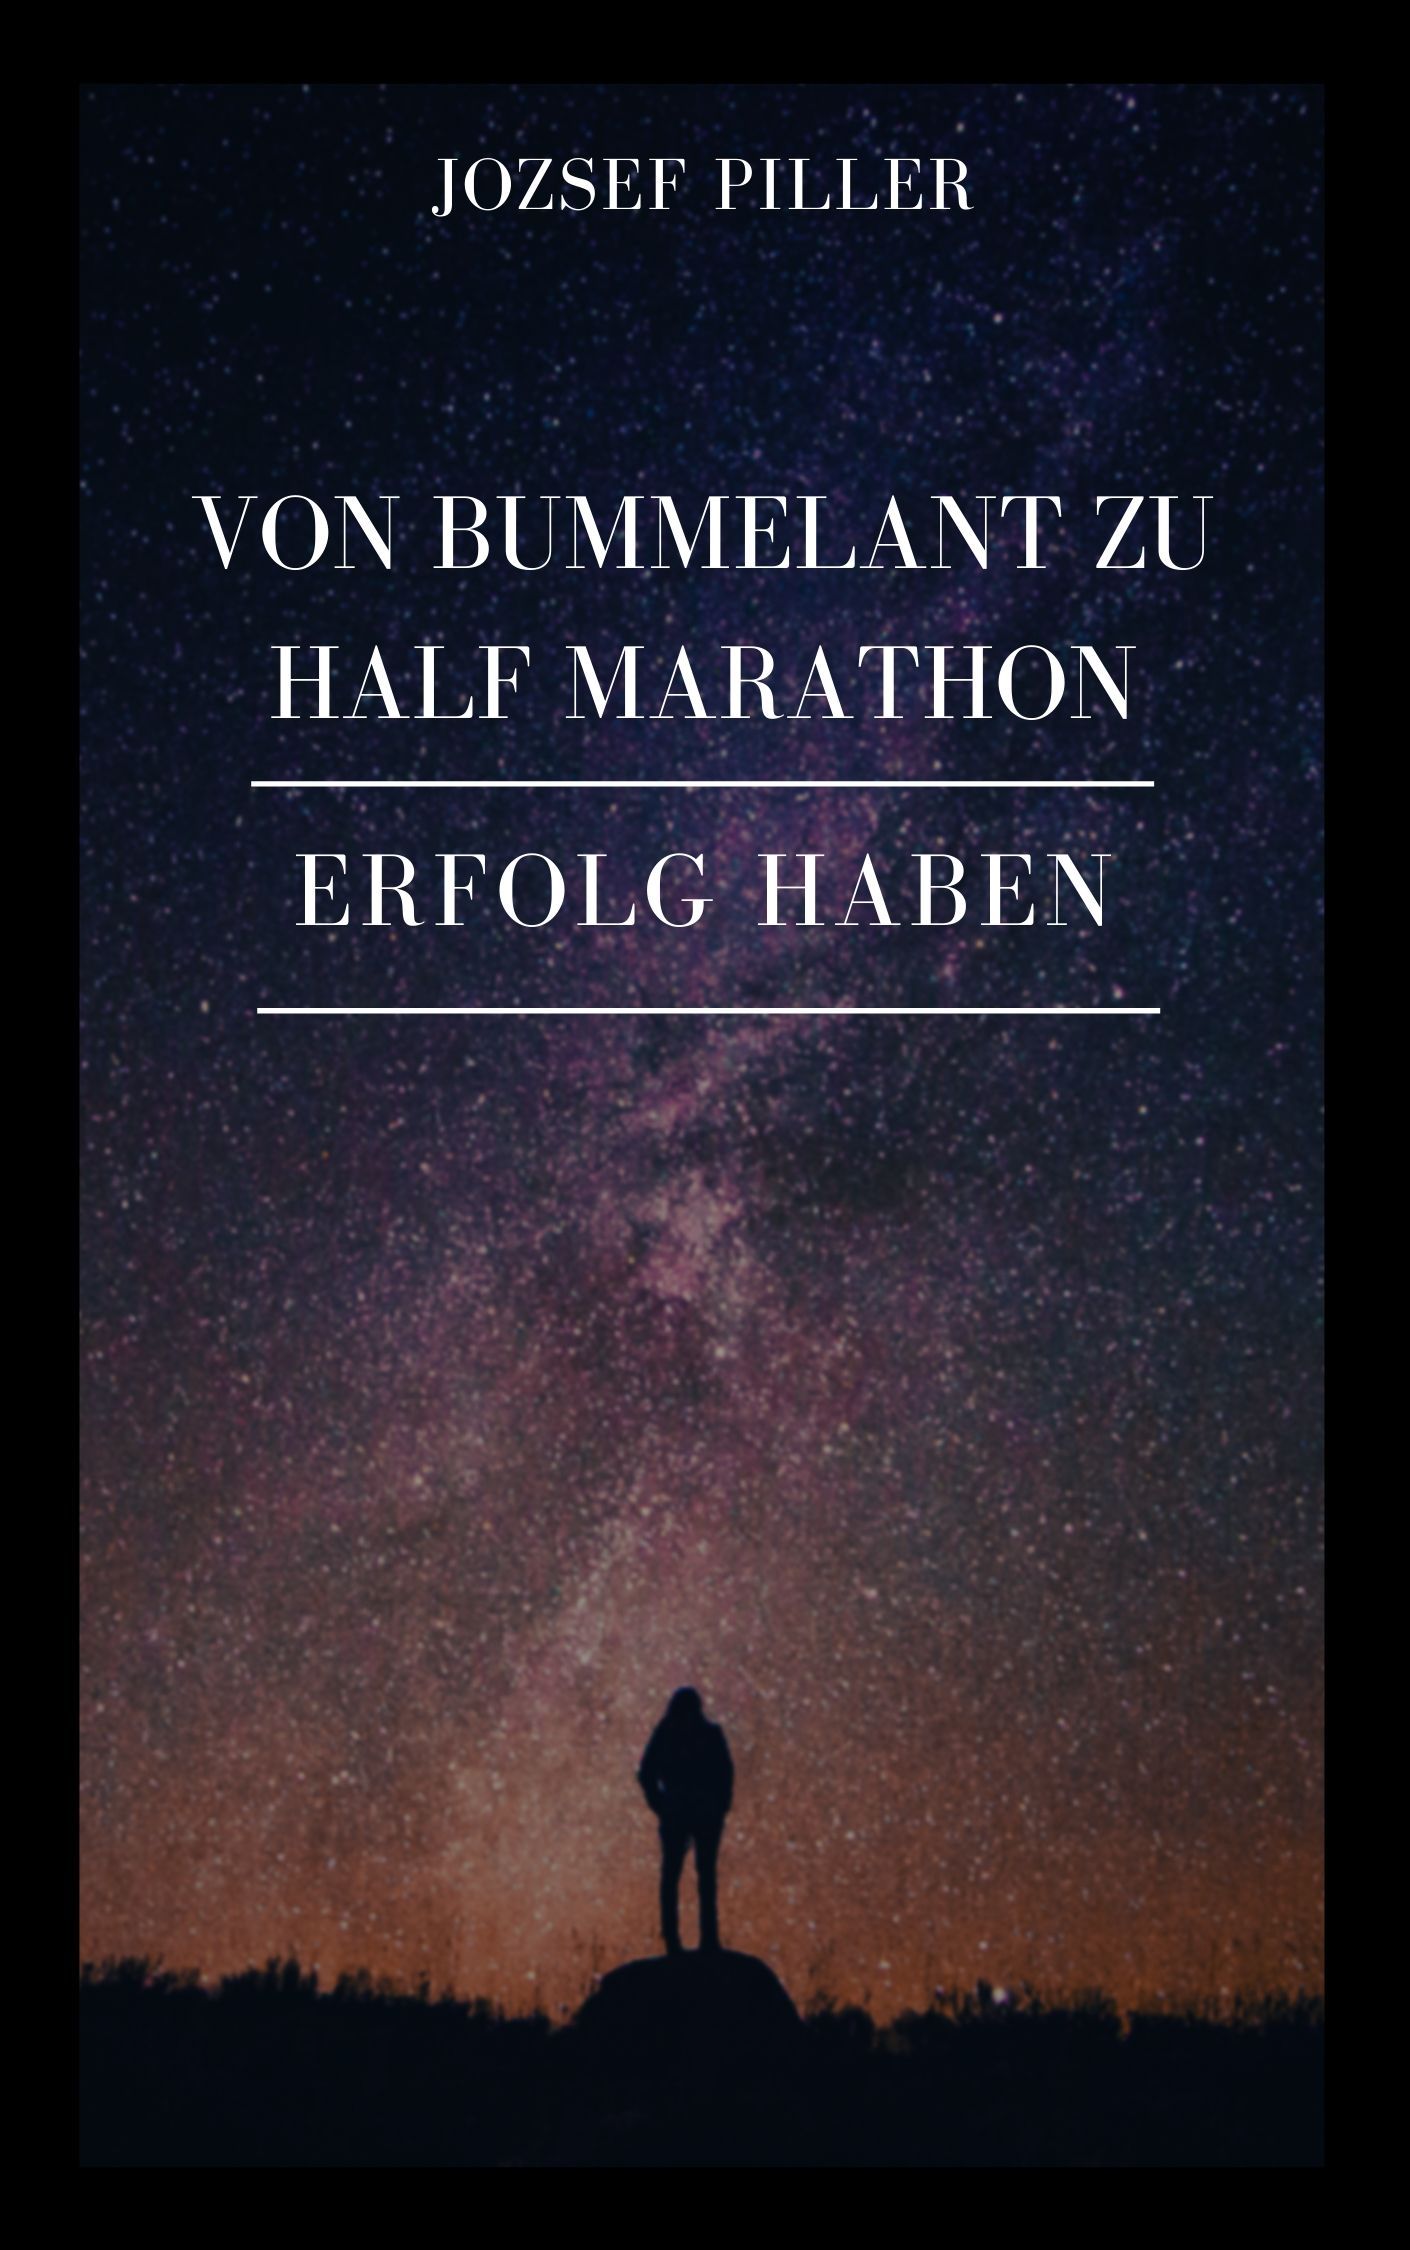 Von Bummelant zu Half Marathon - Wie gelingt es Ihnen?, e-bog af Jozsef Piller